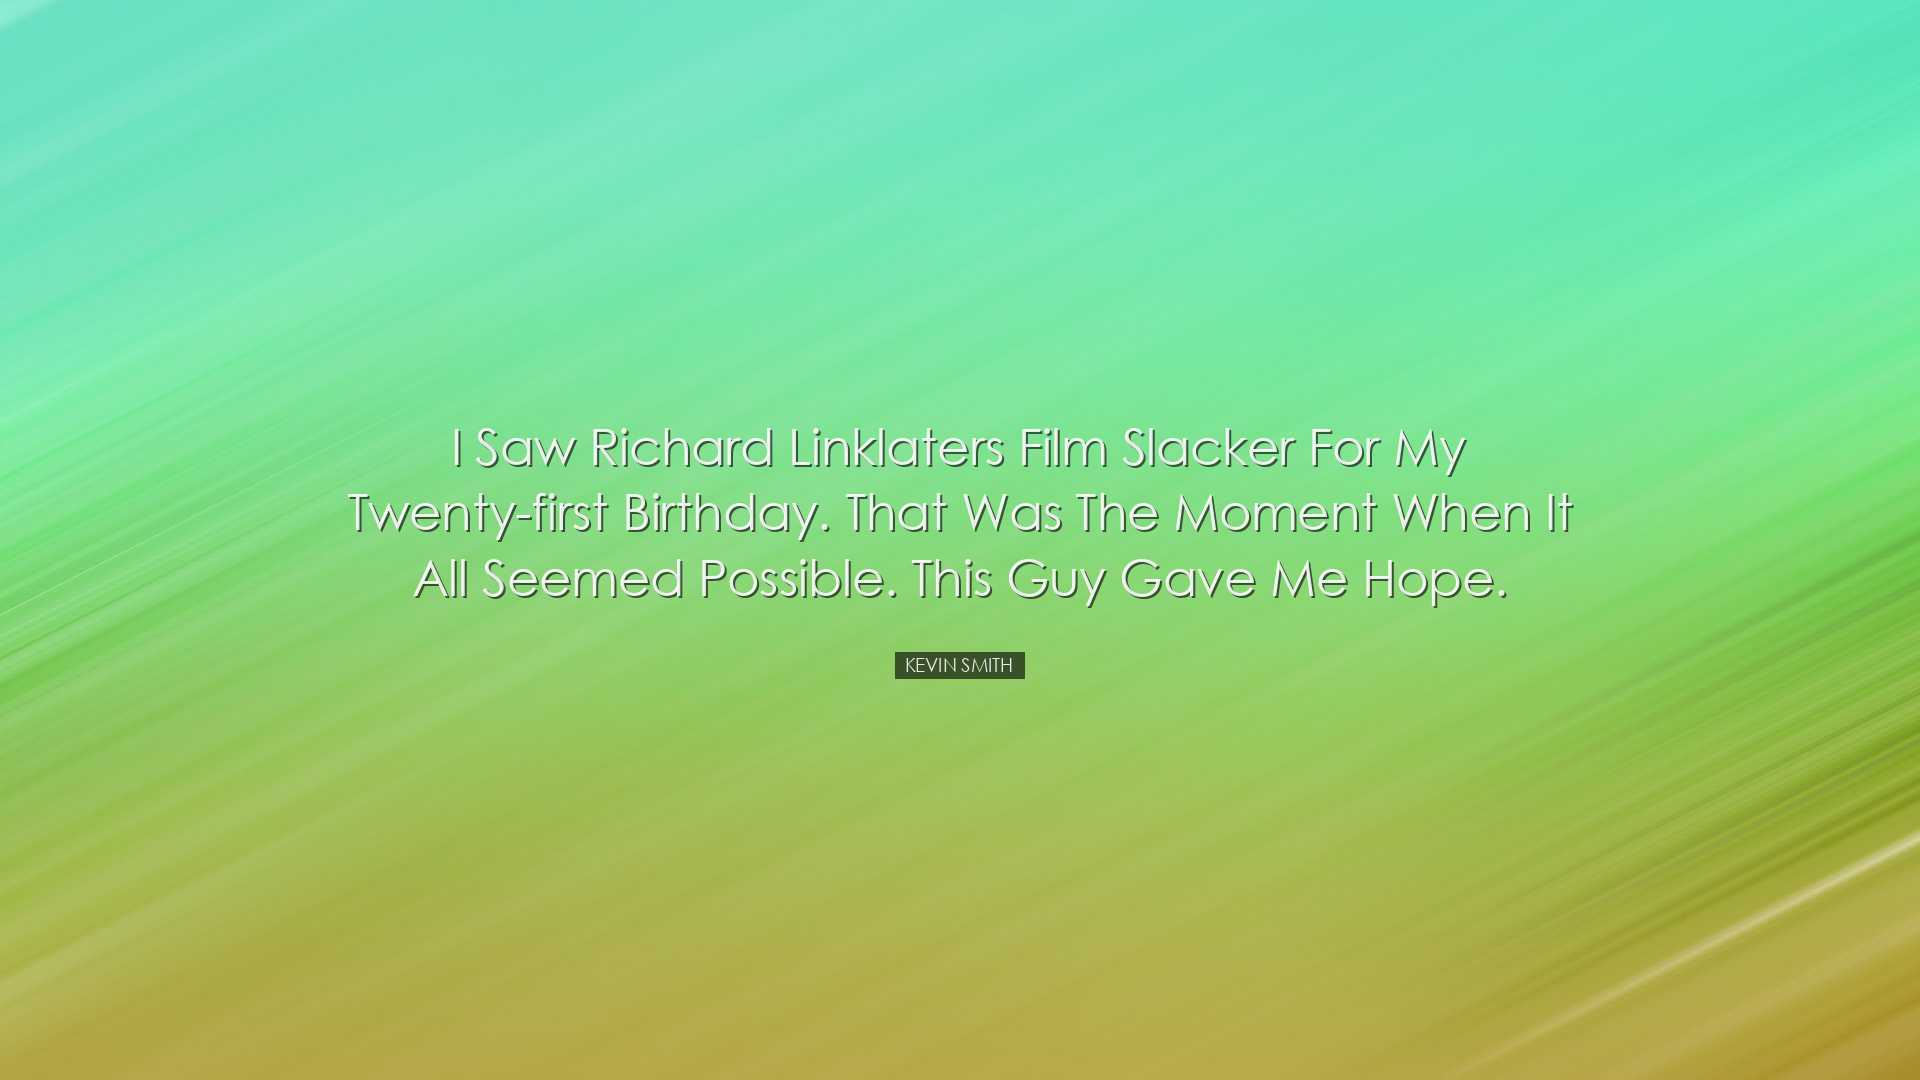 I saw Richard Linklaters film Slacker for my twenty-first birthday